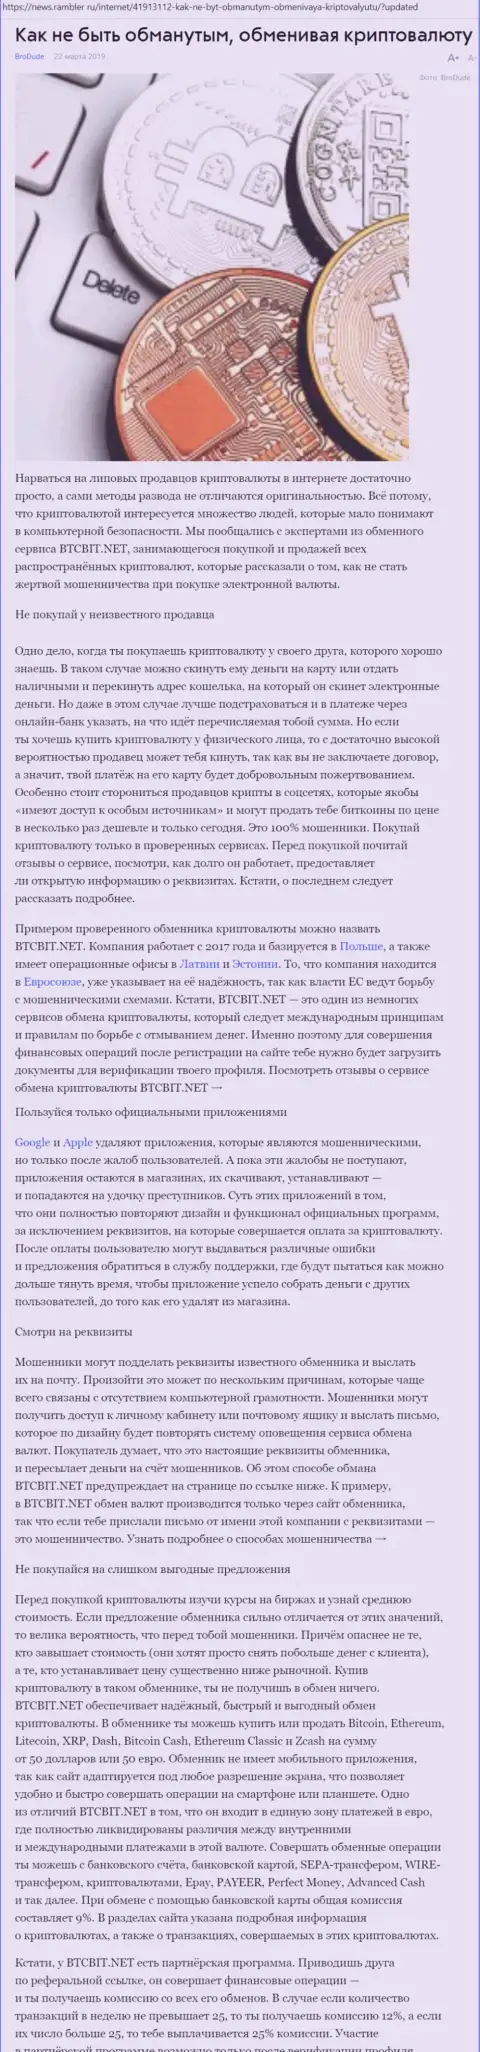 Публикация об онлайн-обменнике БТЦБИТ на news rambler ru